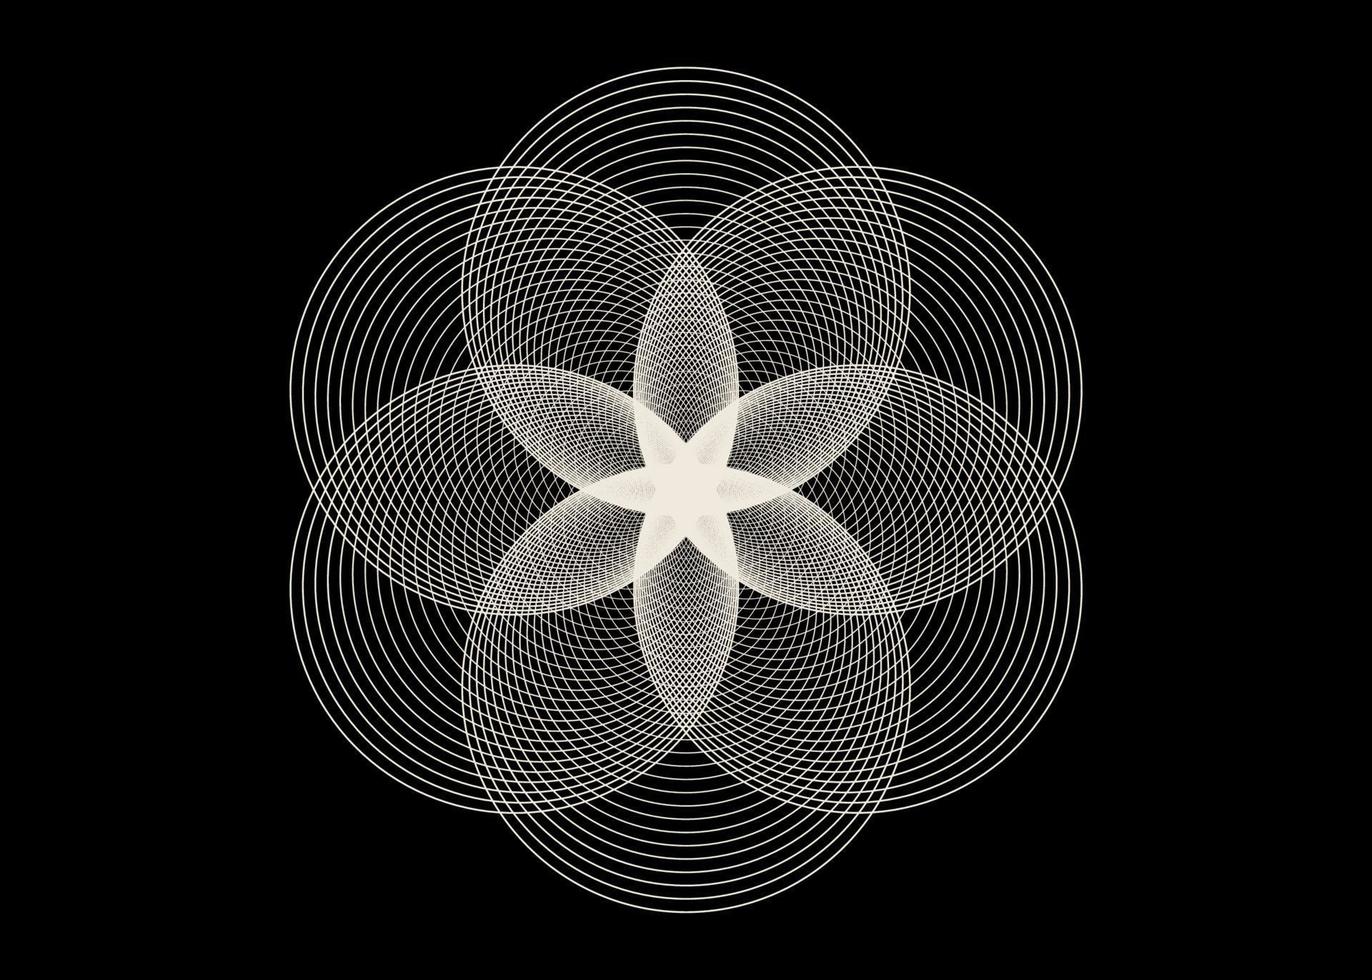 seed flower of life lotusikon, logotyp mandala helig geometri, tatuering symbol för harmoni och balans. mystisk talisman, vita cirklar linjer vektor isolerad på svart bakgrund